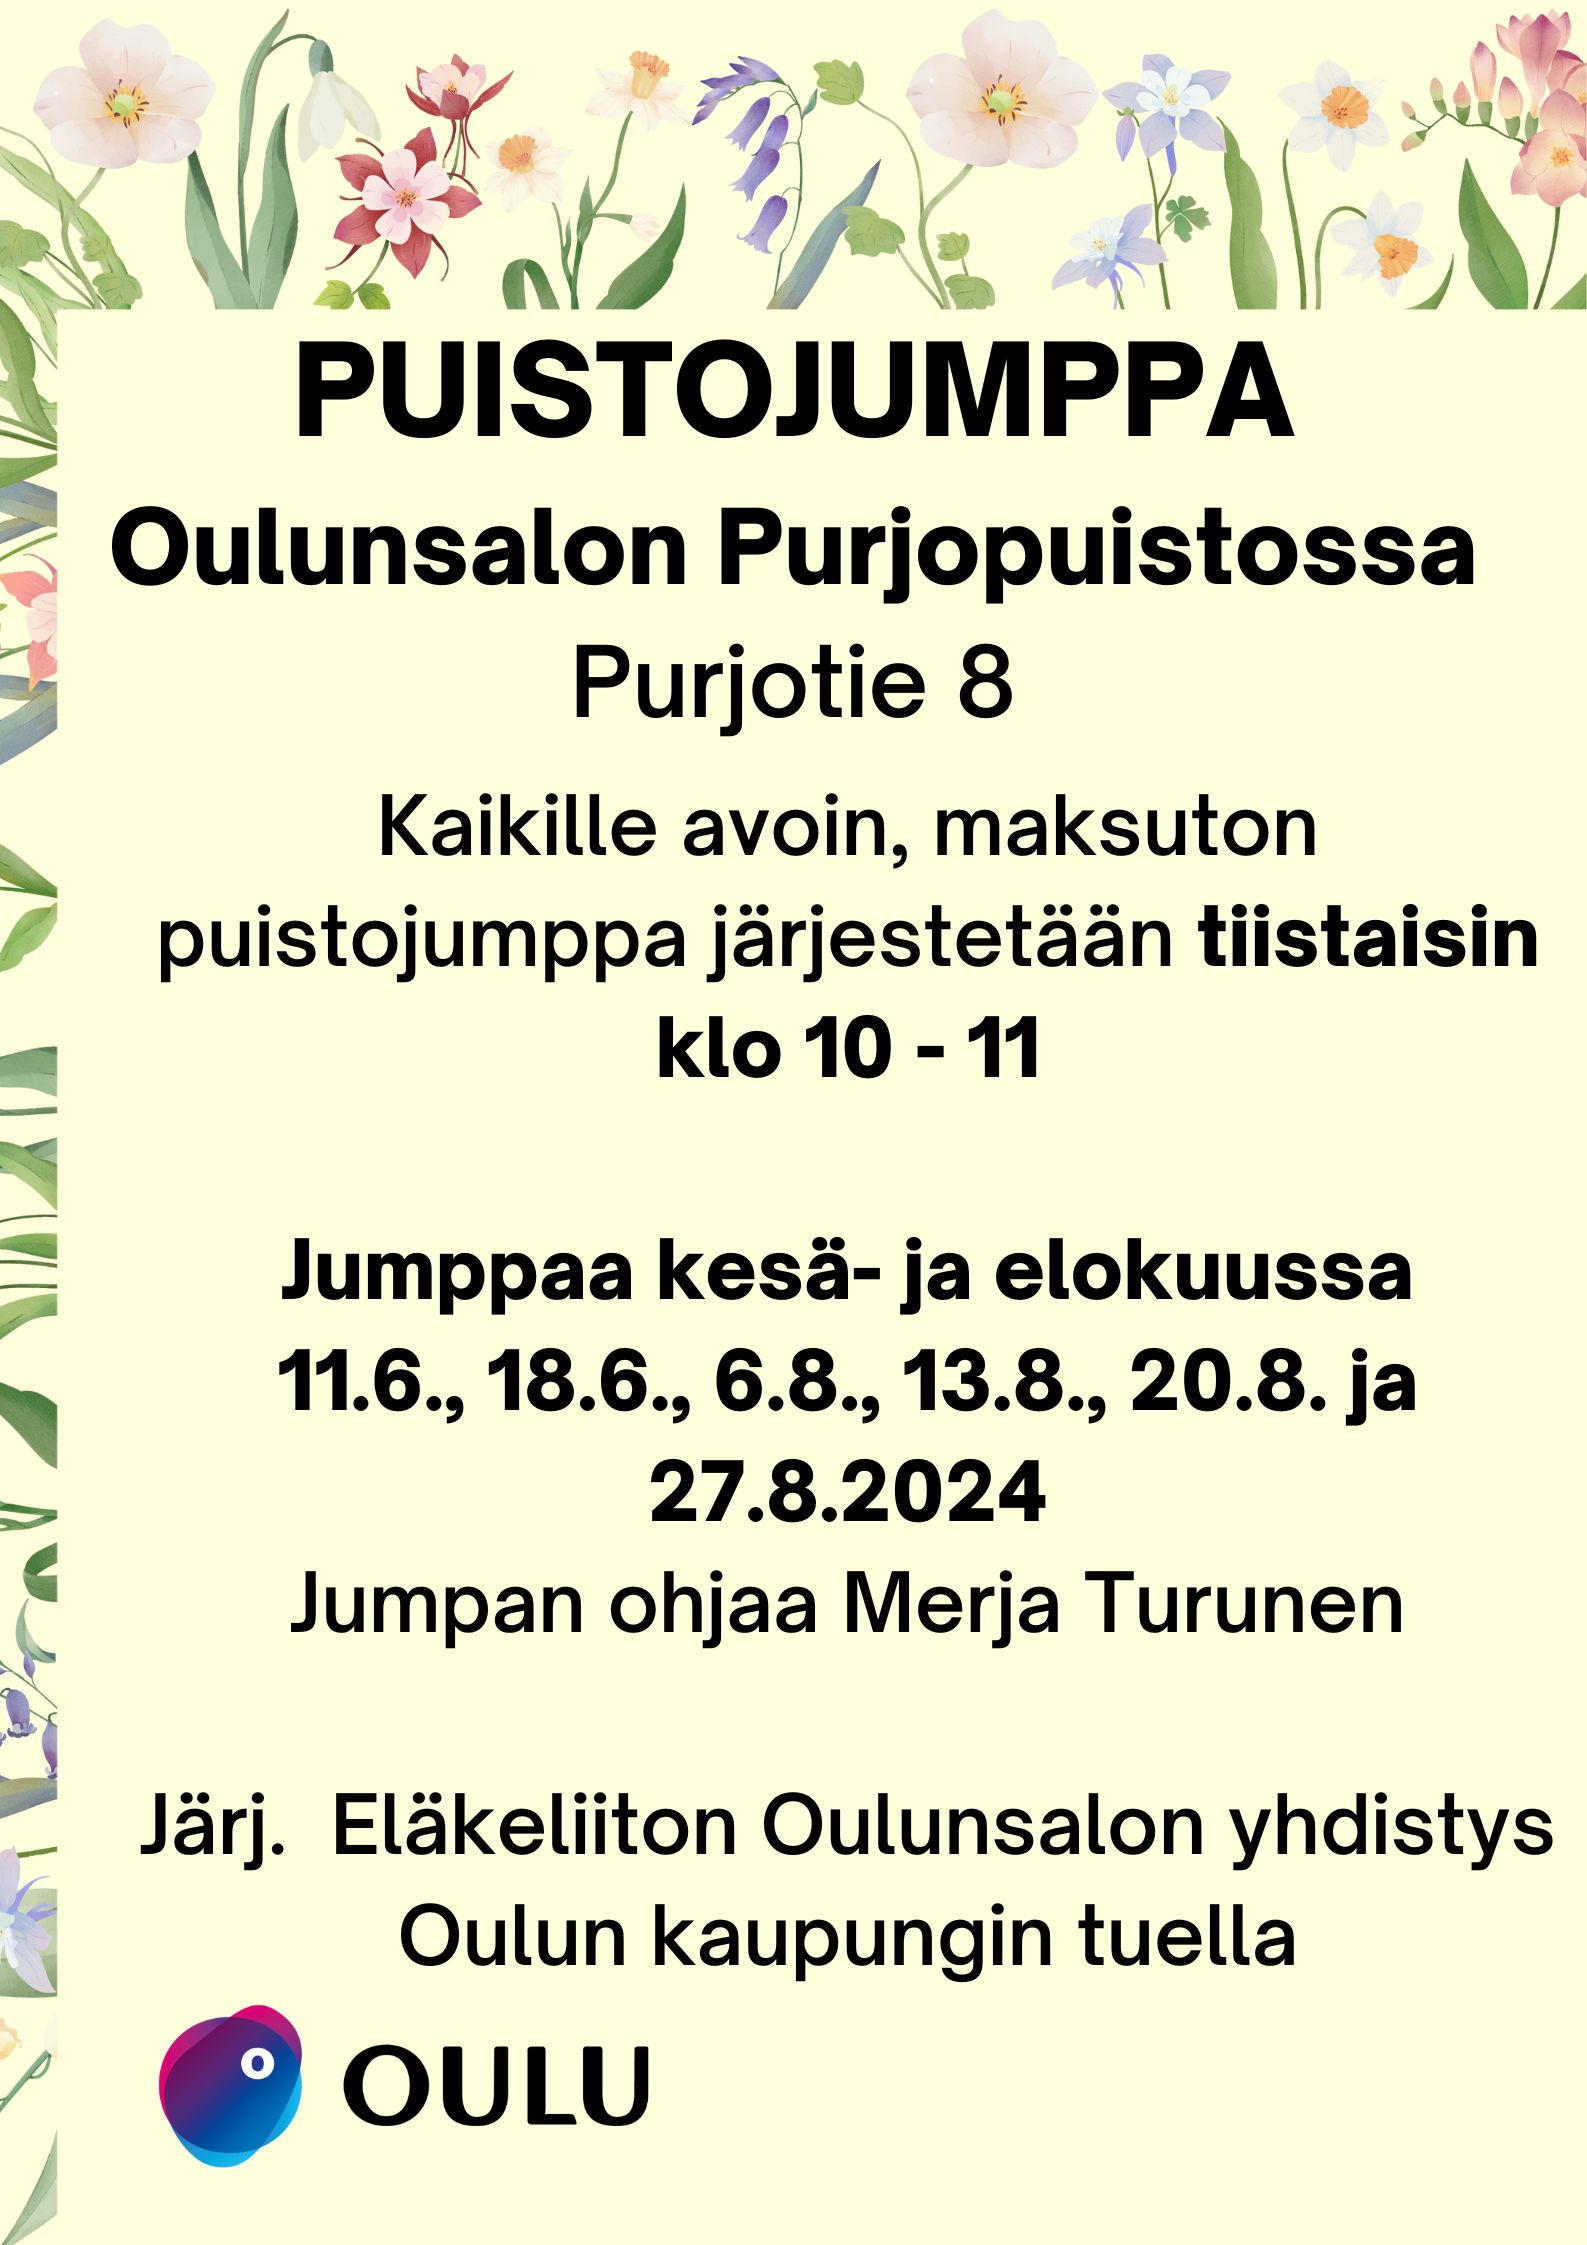 Puistojumppa Oulunsalon Purjopuistossa